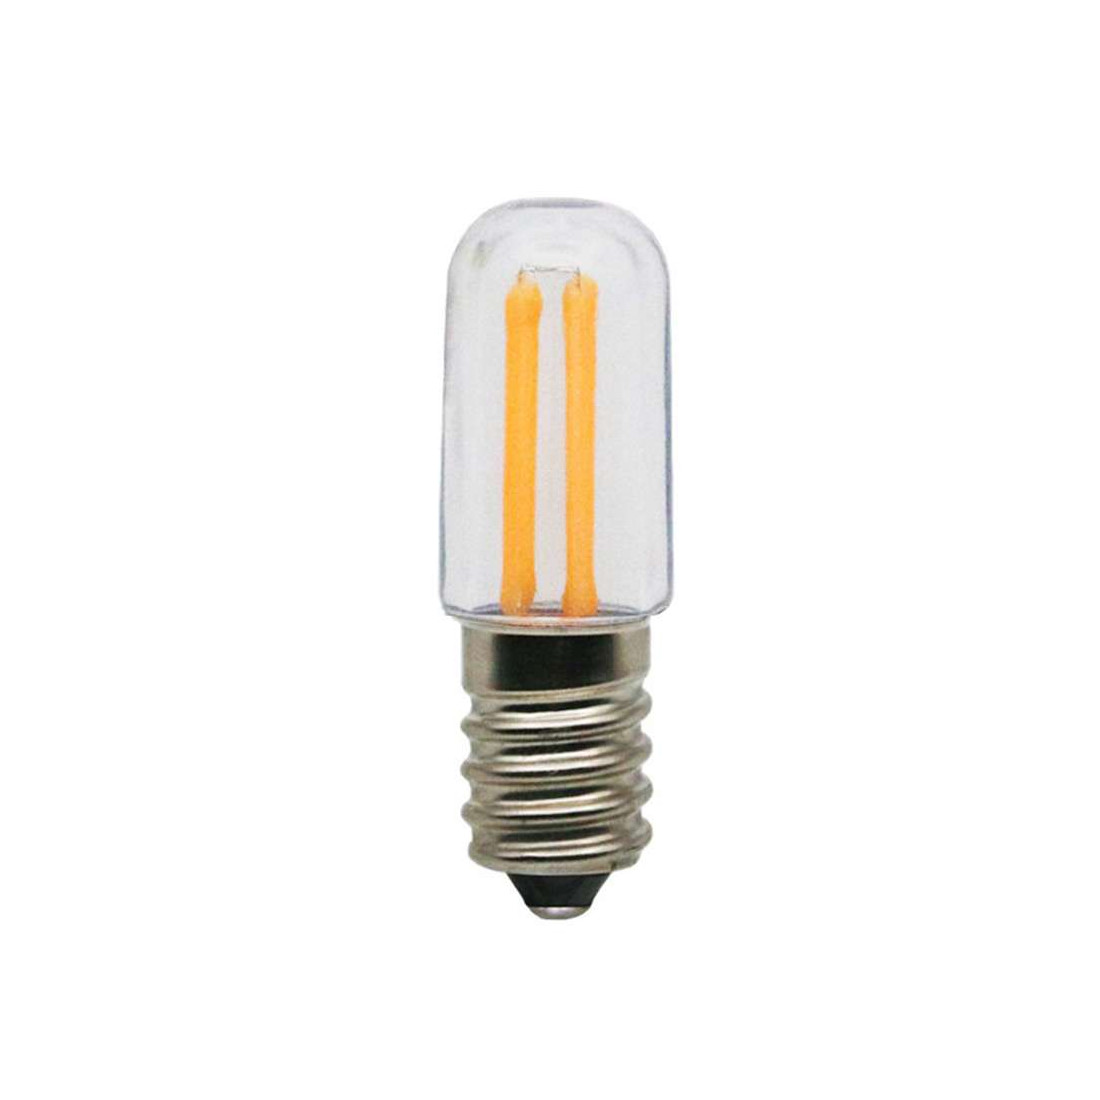 10pcs Dimmable Mini Led Réfrigérateur Ampoules Ampoule E12 E14 110V 220V  Vintage Filament Lumières Lampe pour Lustres de Plafond Maison